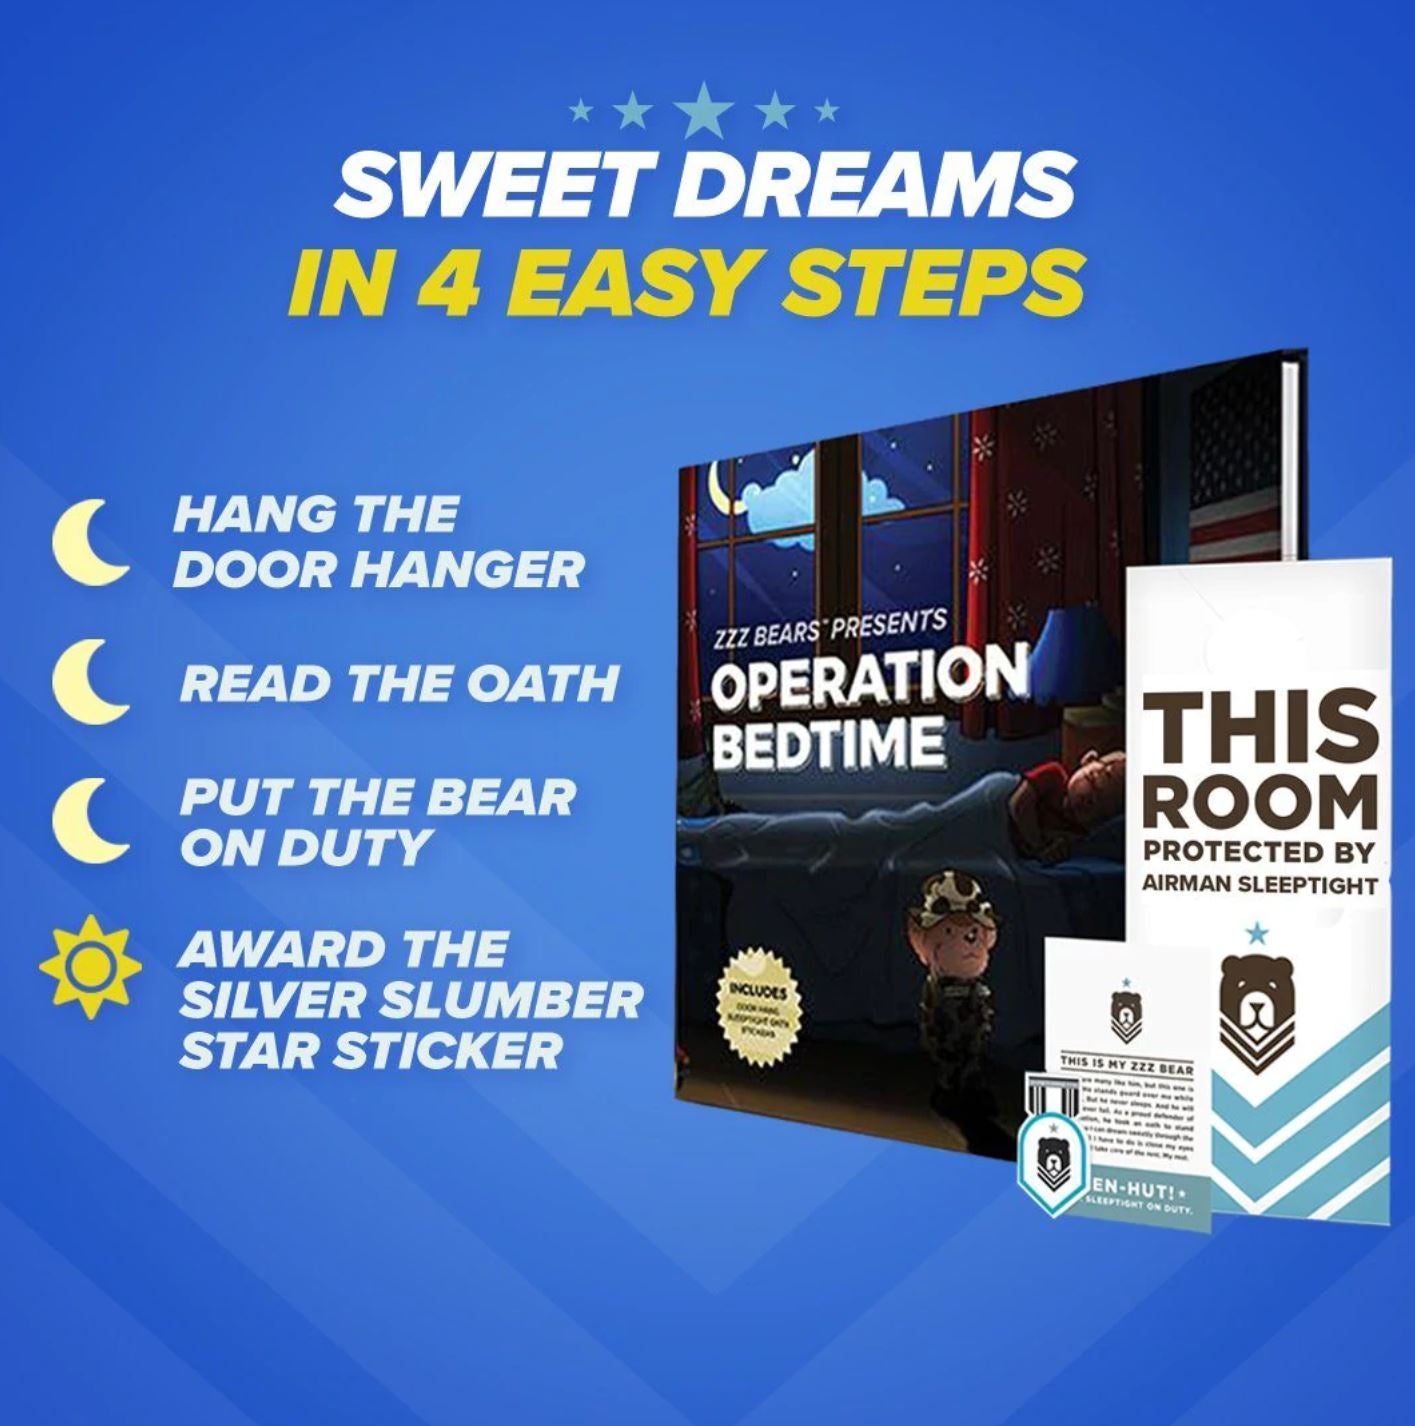 Airman Sleeptight - Air Force Teddy Bear with Storybook & Sleep System